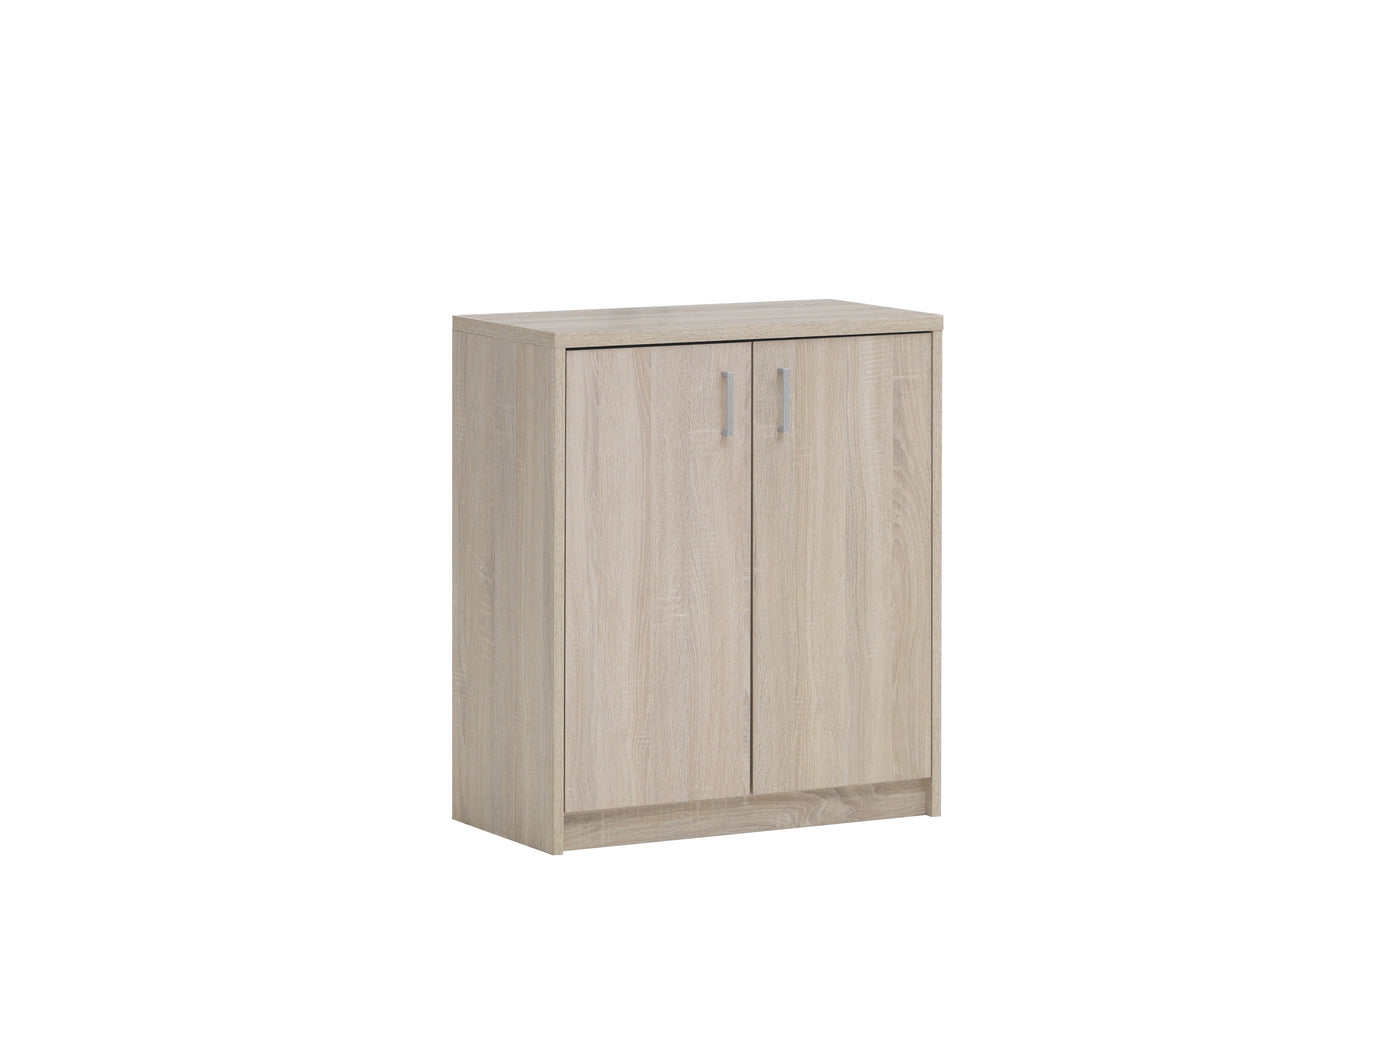 Compacte houten opbergkast met twee deuren, ideaal voor kantoor of thuiswerkplek. Strak en functioneel ontwerp biedt voldoende opbergruimte voor documenten en kantoorbenodigdheden.